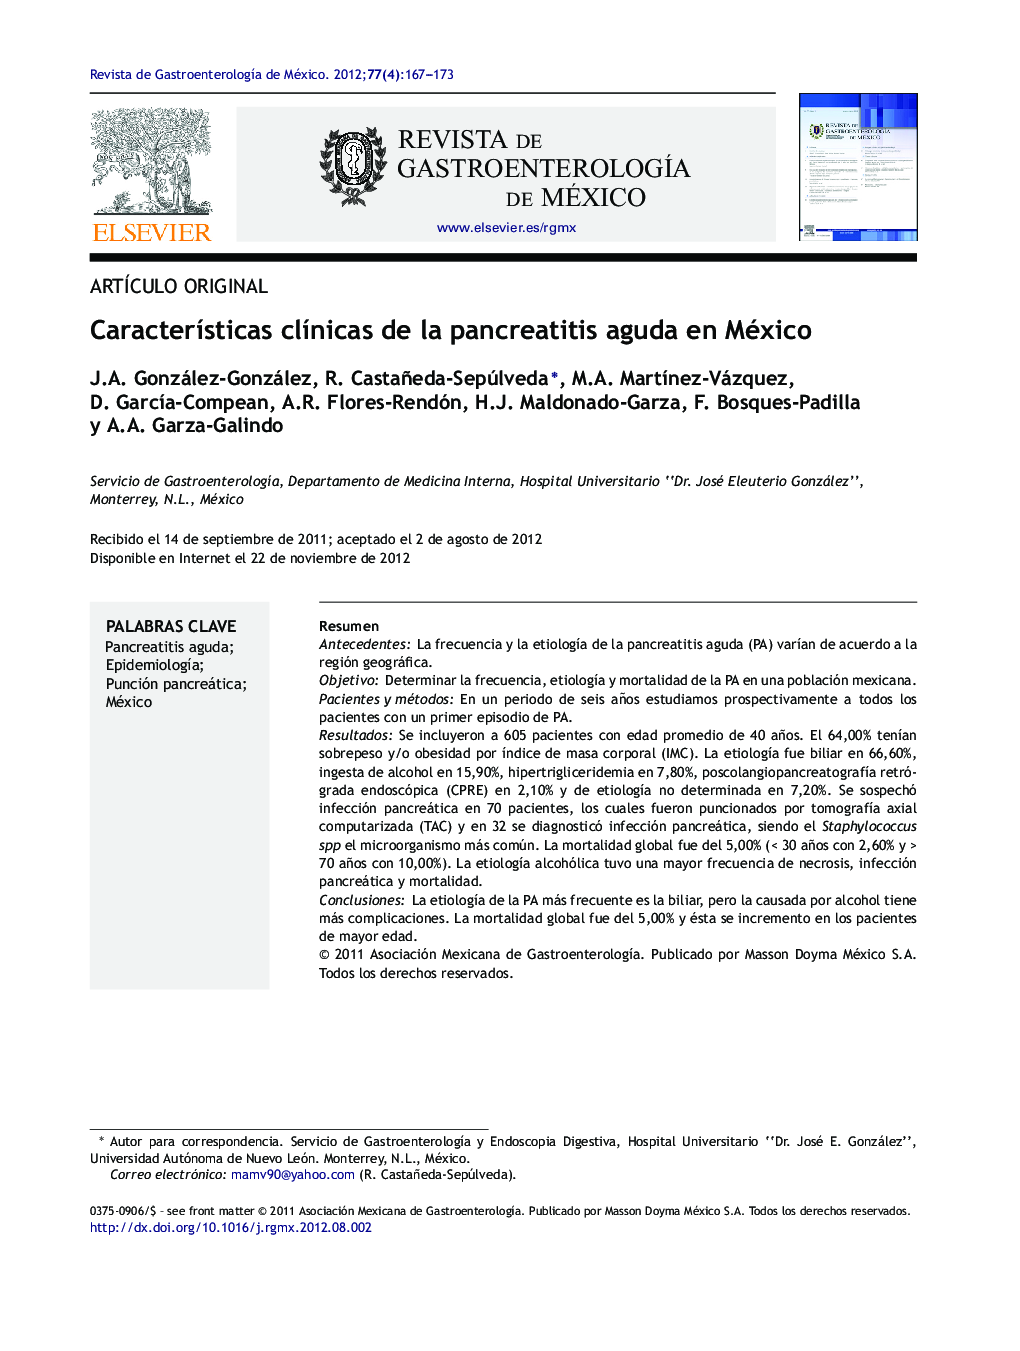 Características clínicas de la pancreatitis aguda en México